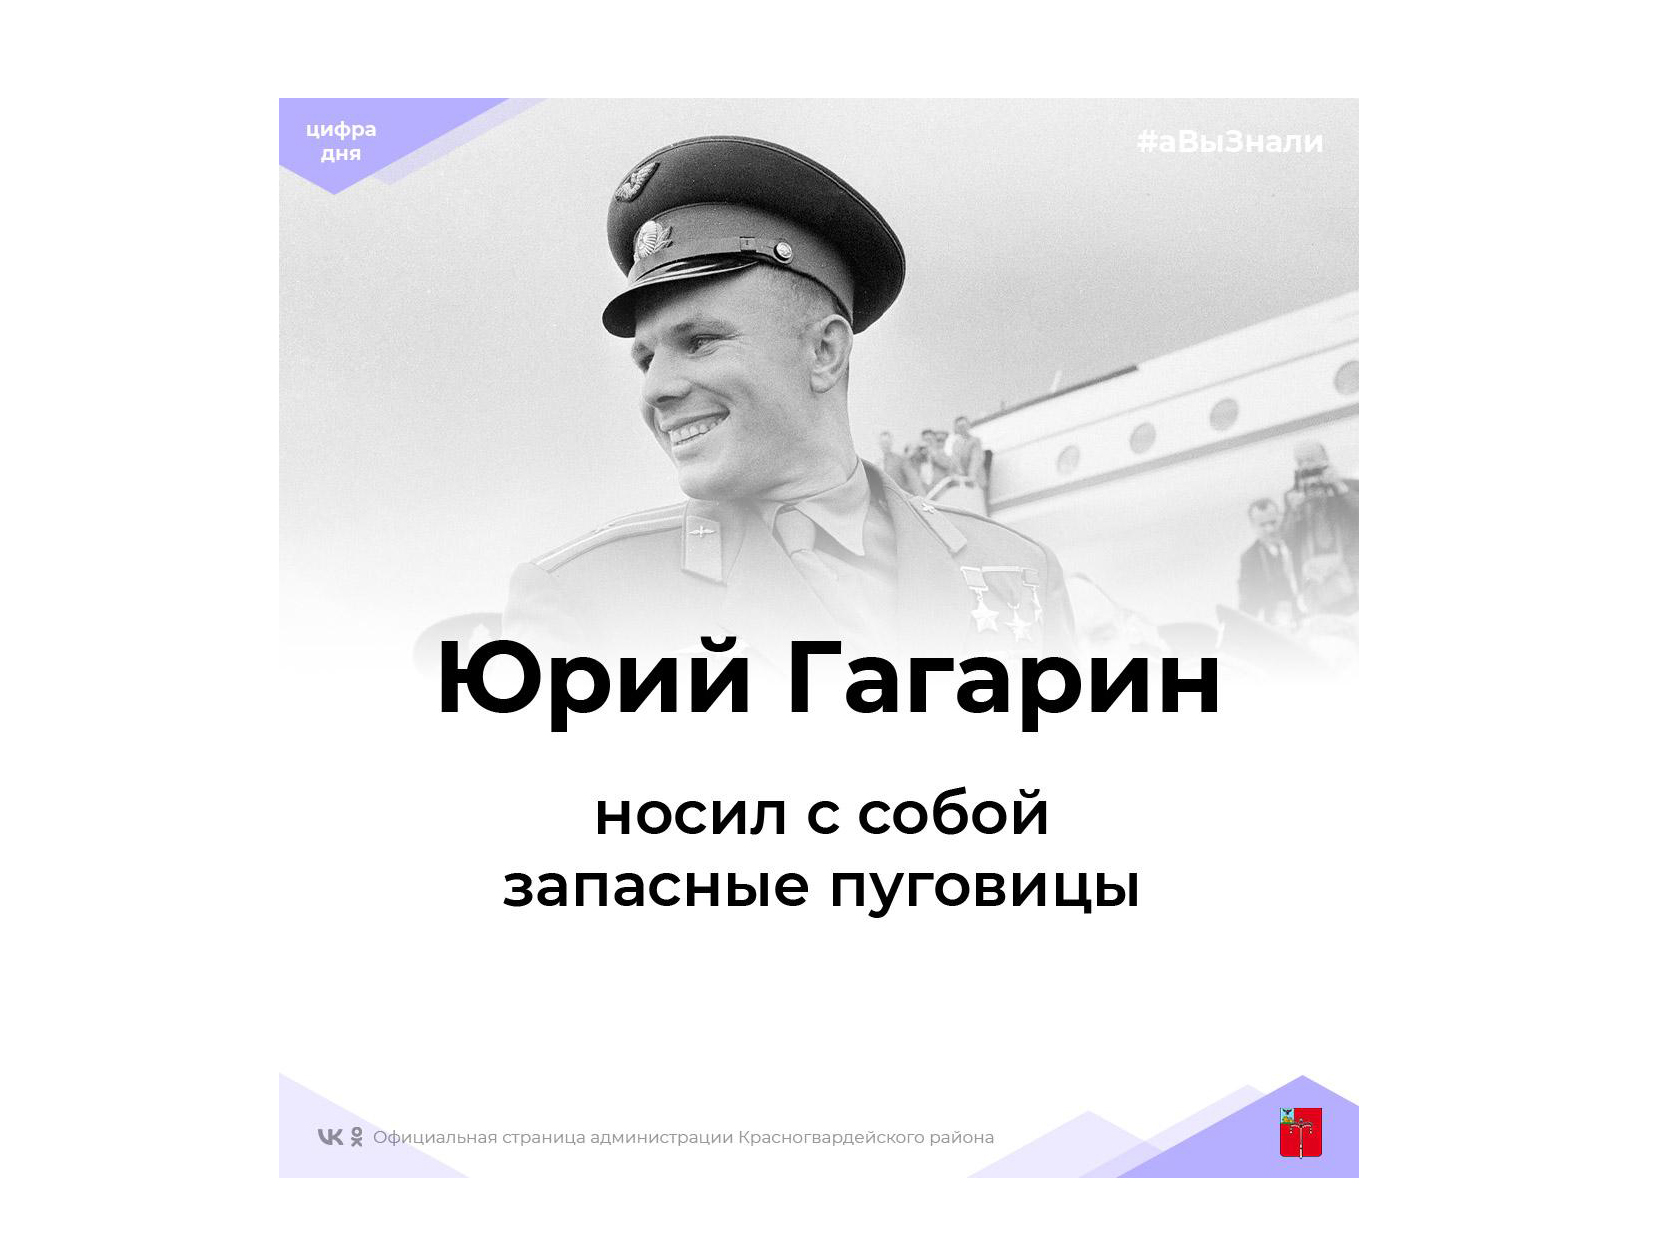 #аВыЗнали, что у первого космонавта Юрия Гагарина всегда с собой были запасные пуговицы?.